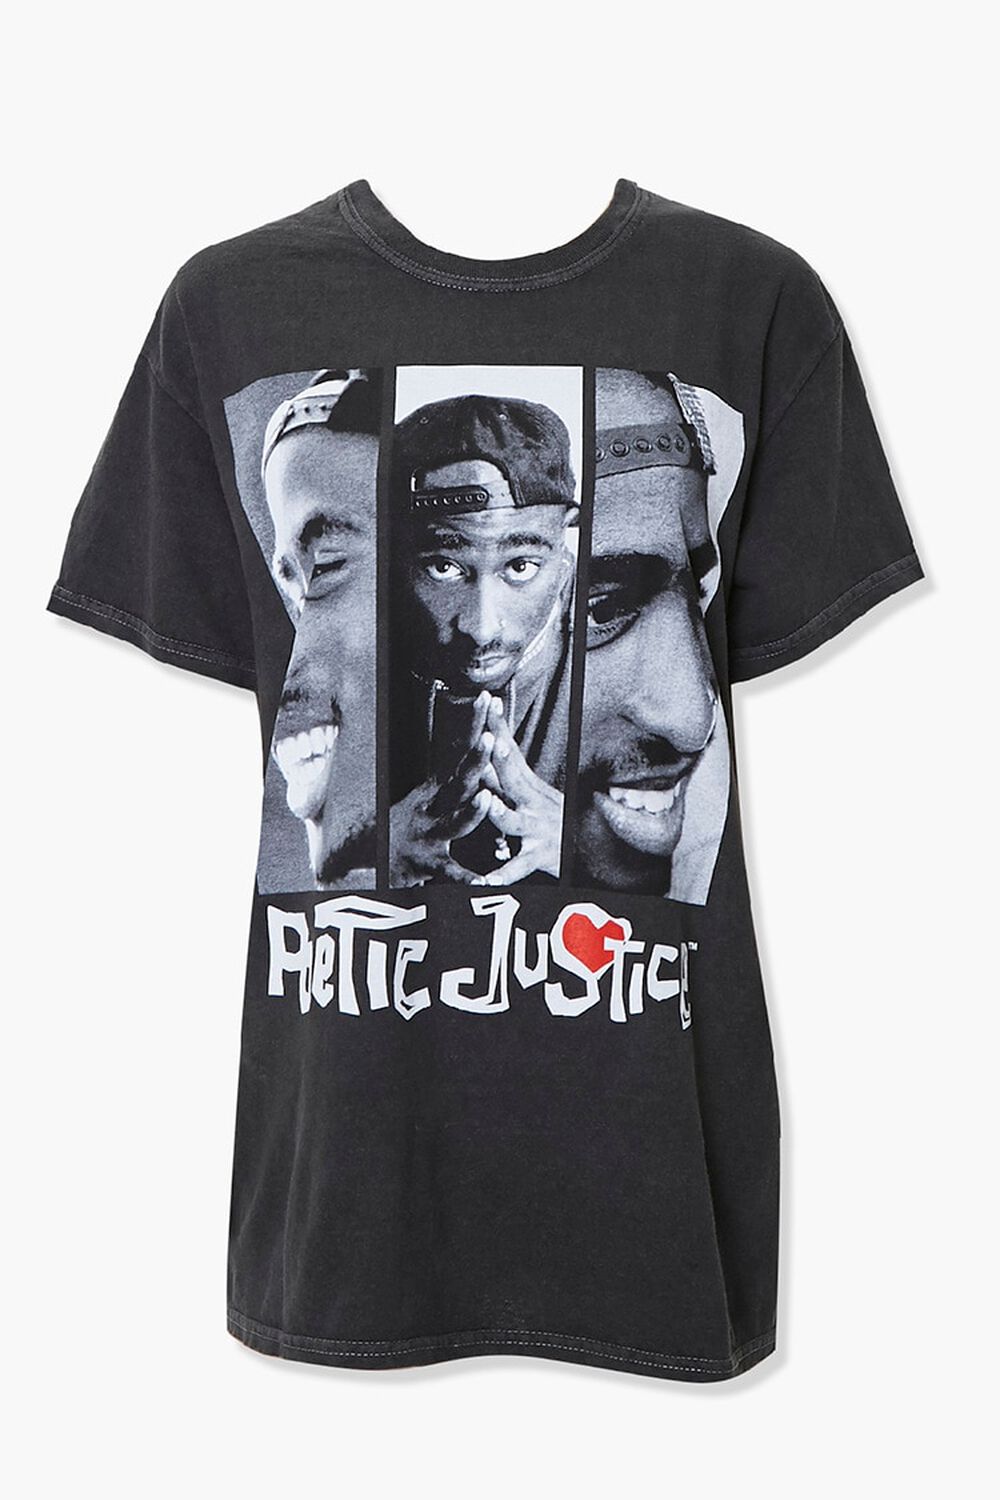 Graphic Tee, Tupac shirt, Tupac Shakur, Contemporary Abstract Drawing, –  KatiaSkye